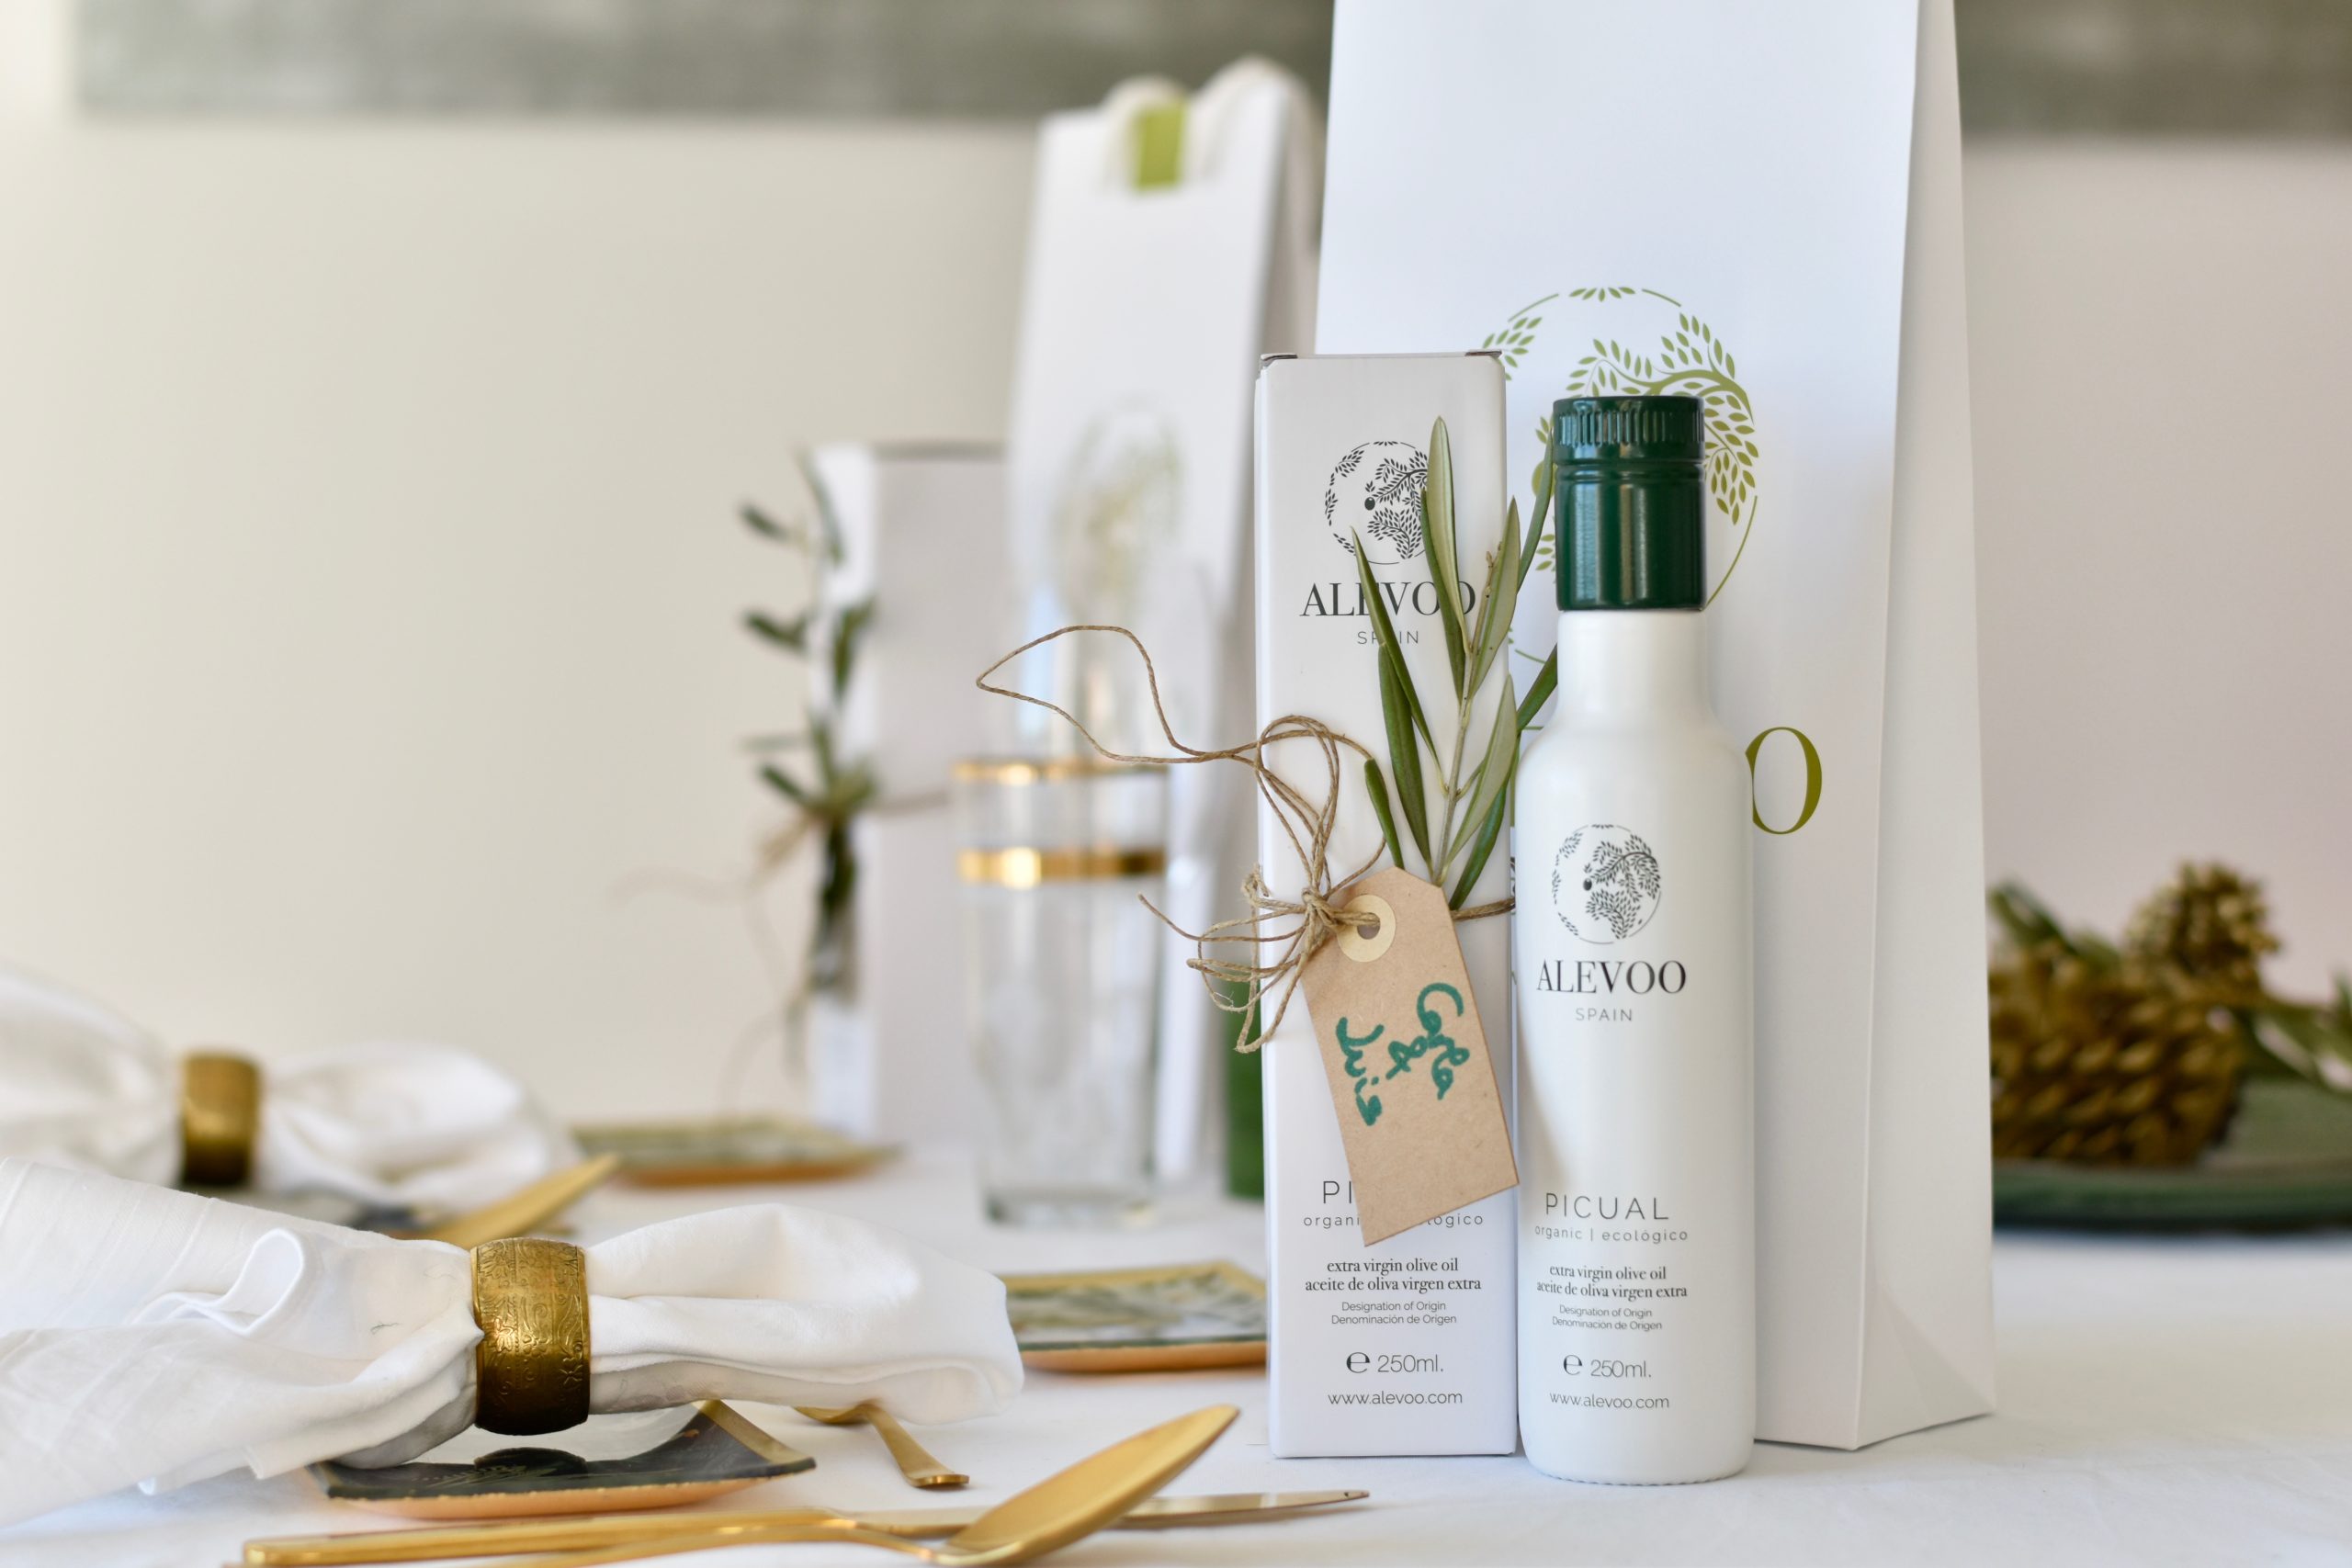 Aceite de oliva virgen extra para invitados a la boda